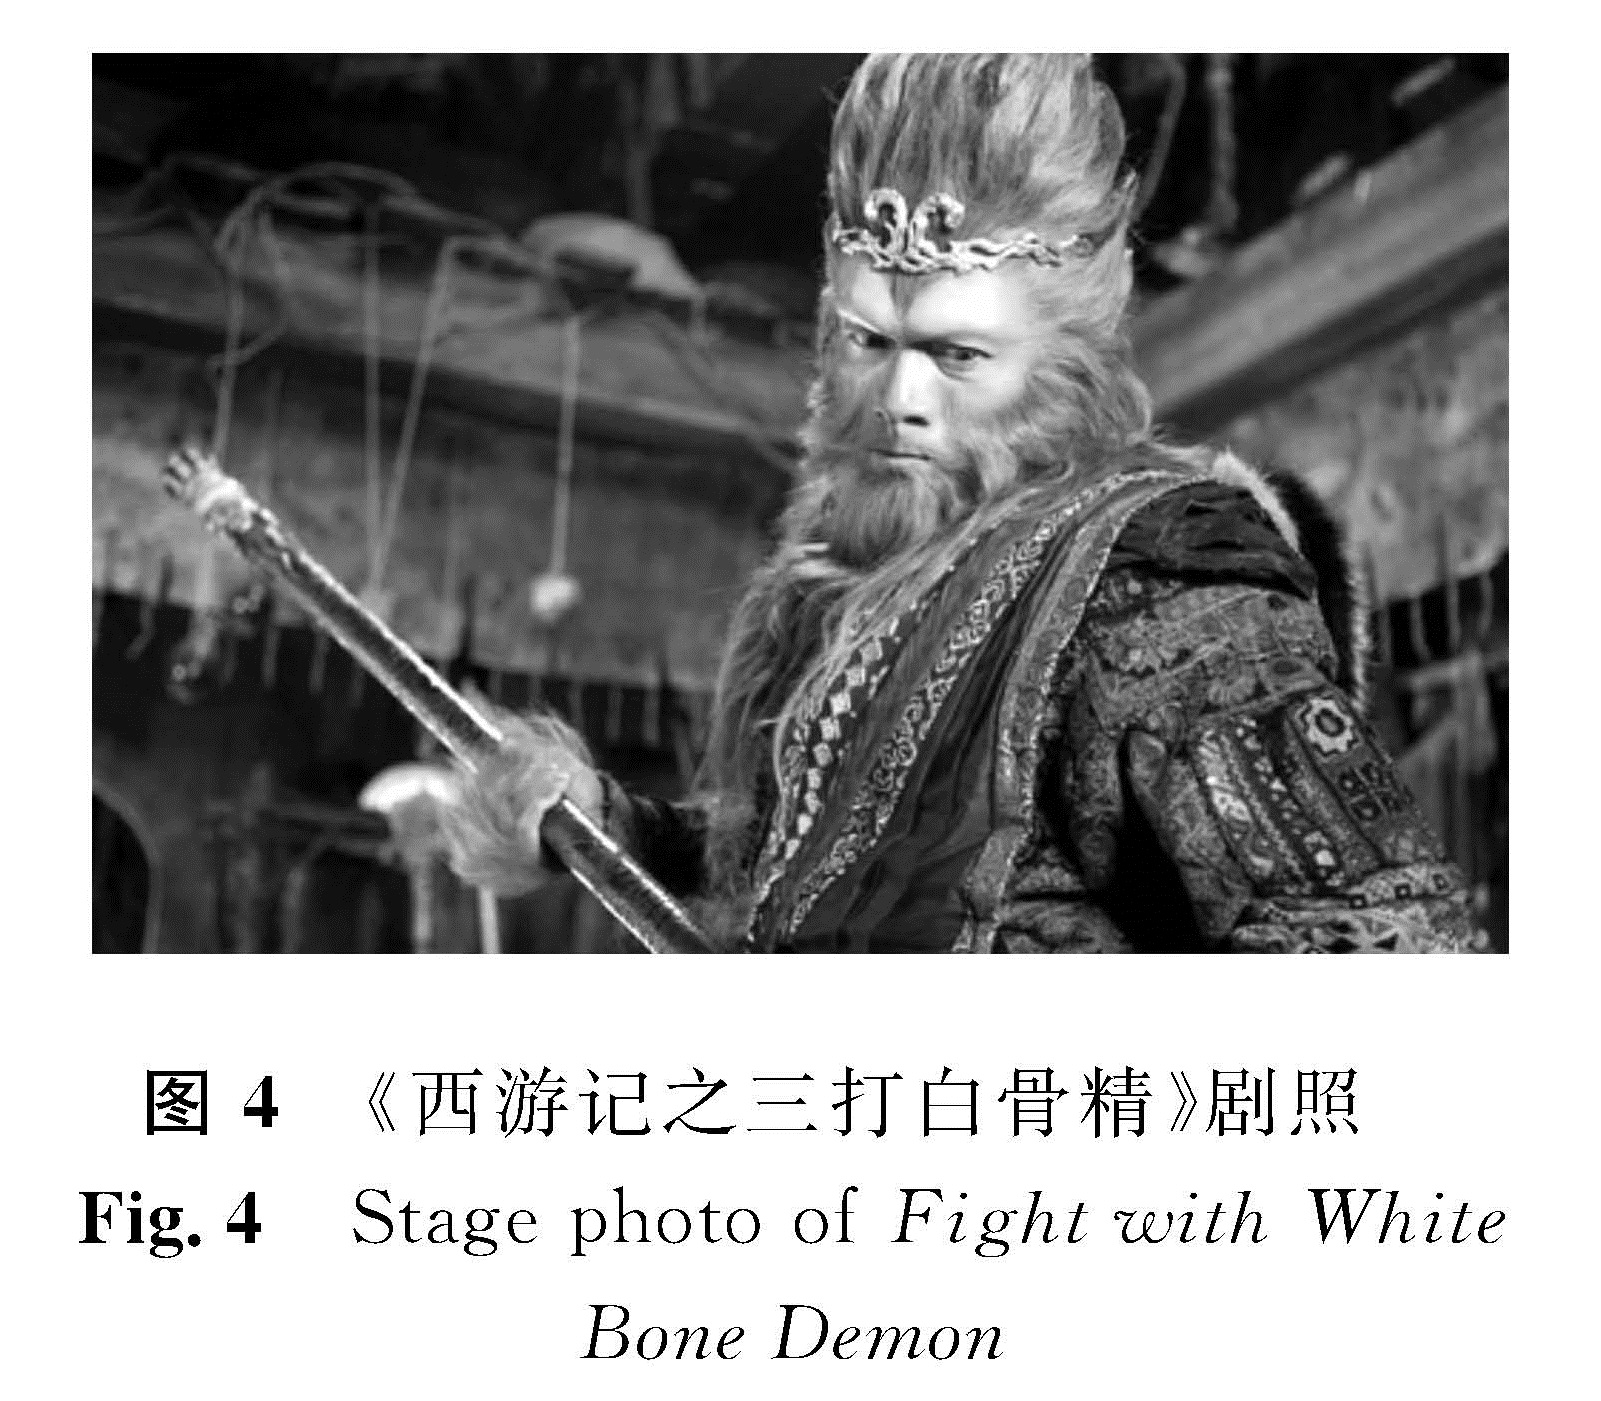 图4 《西游记之三打白骨精》剧照<br/>Fig.4 Stage photo of Fight with White Bone Demon